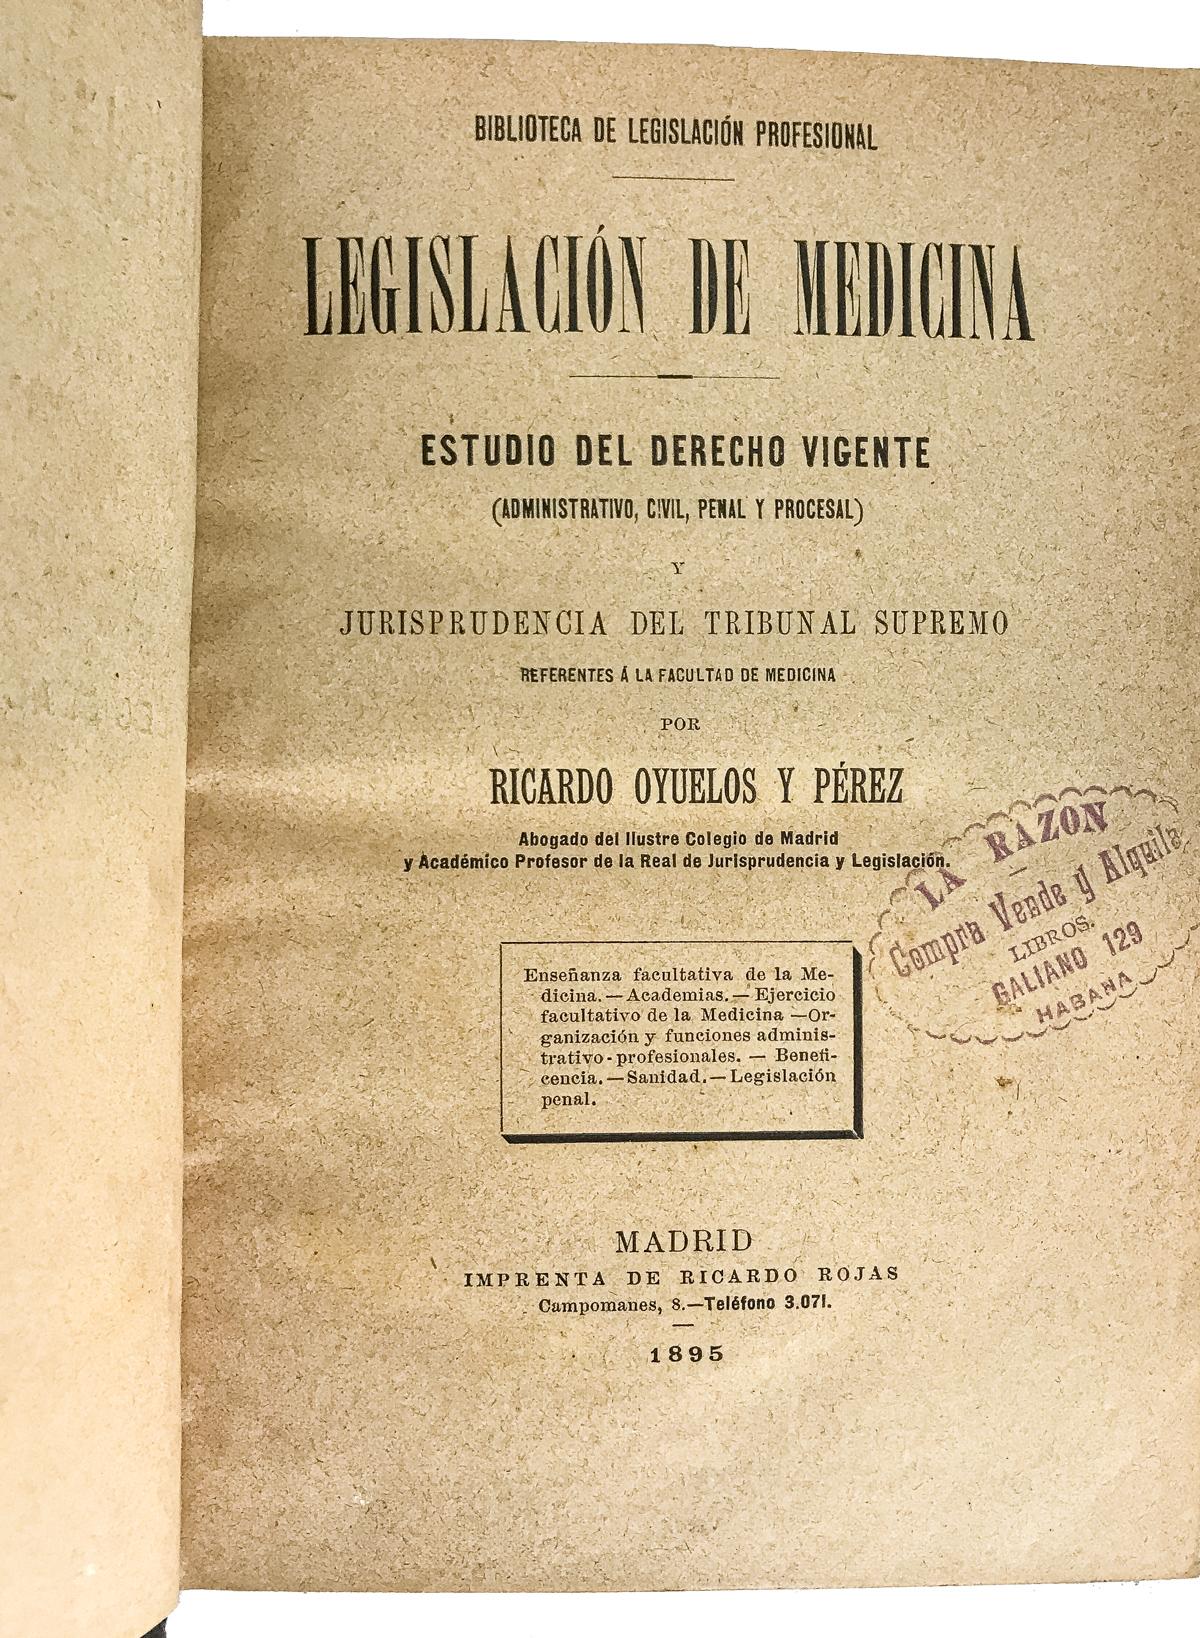 "LEGISLACIÓN DE MEDICINA"